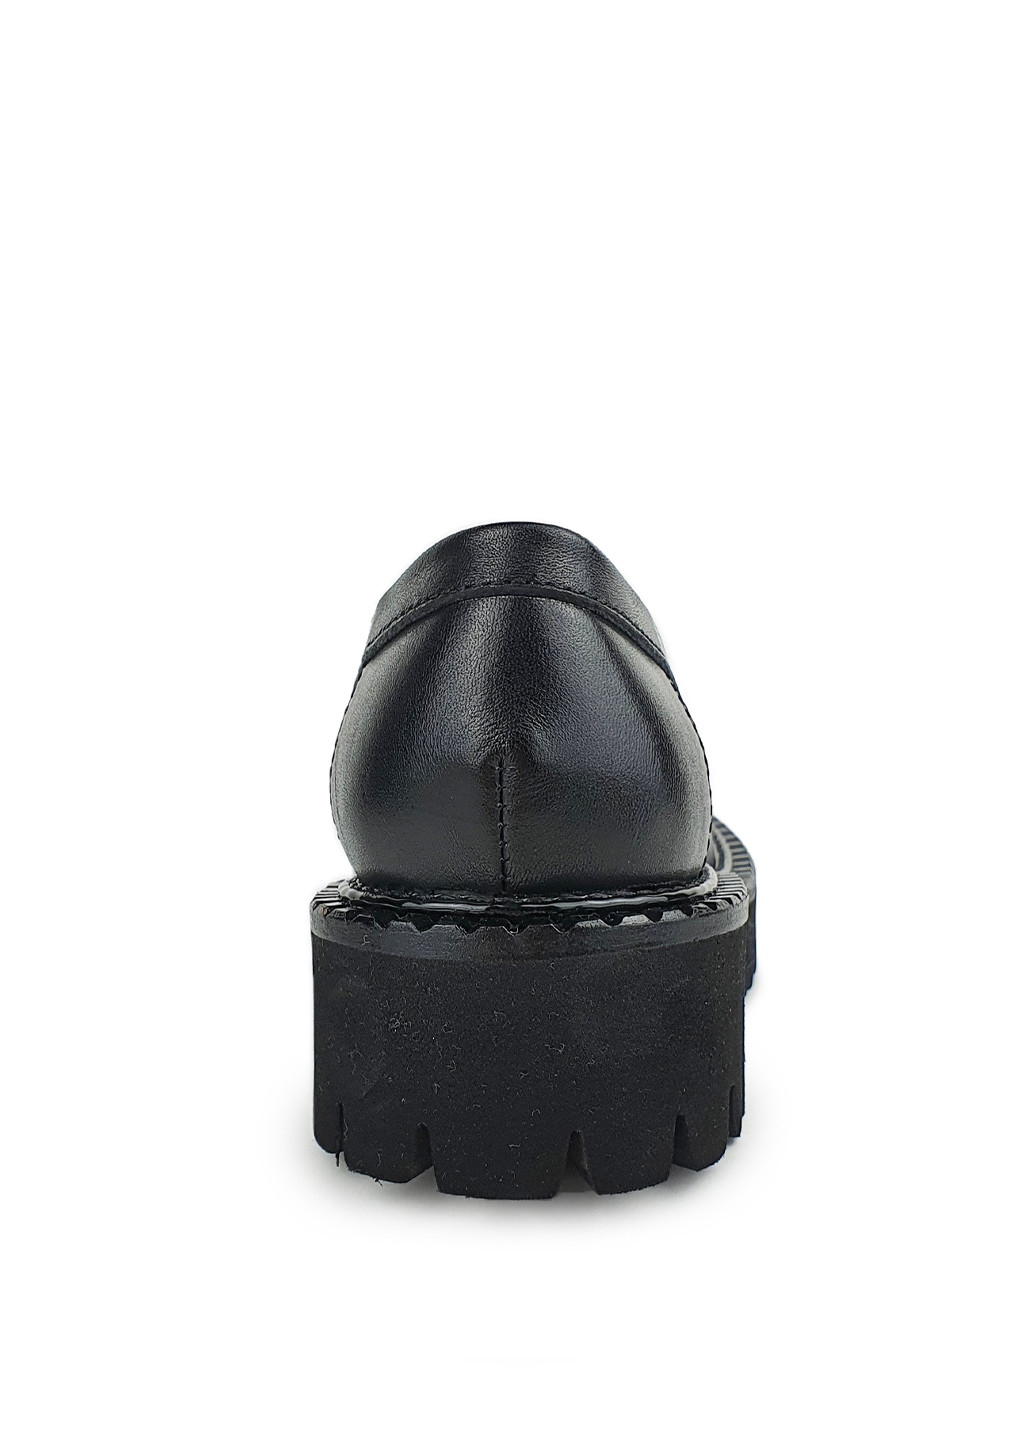 Жіночі туфлі лофери чорного кольору на невисокому каблуці Brocoli (244376033)